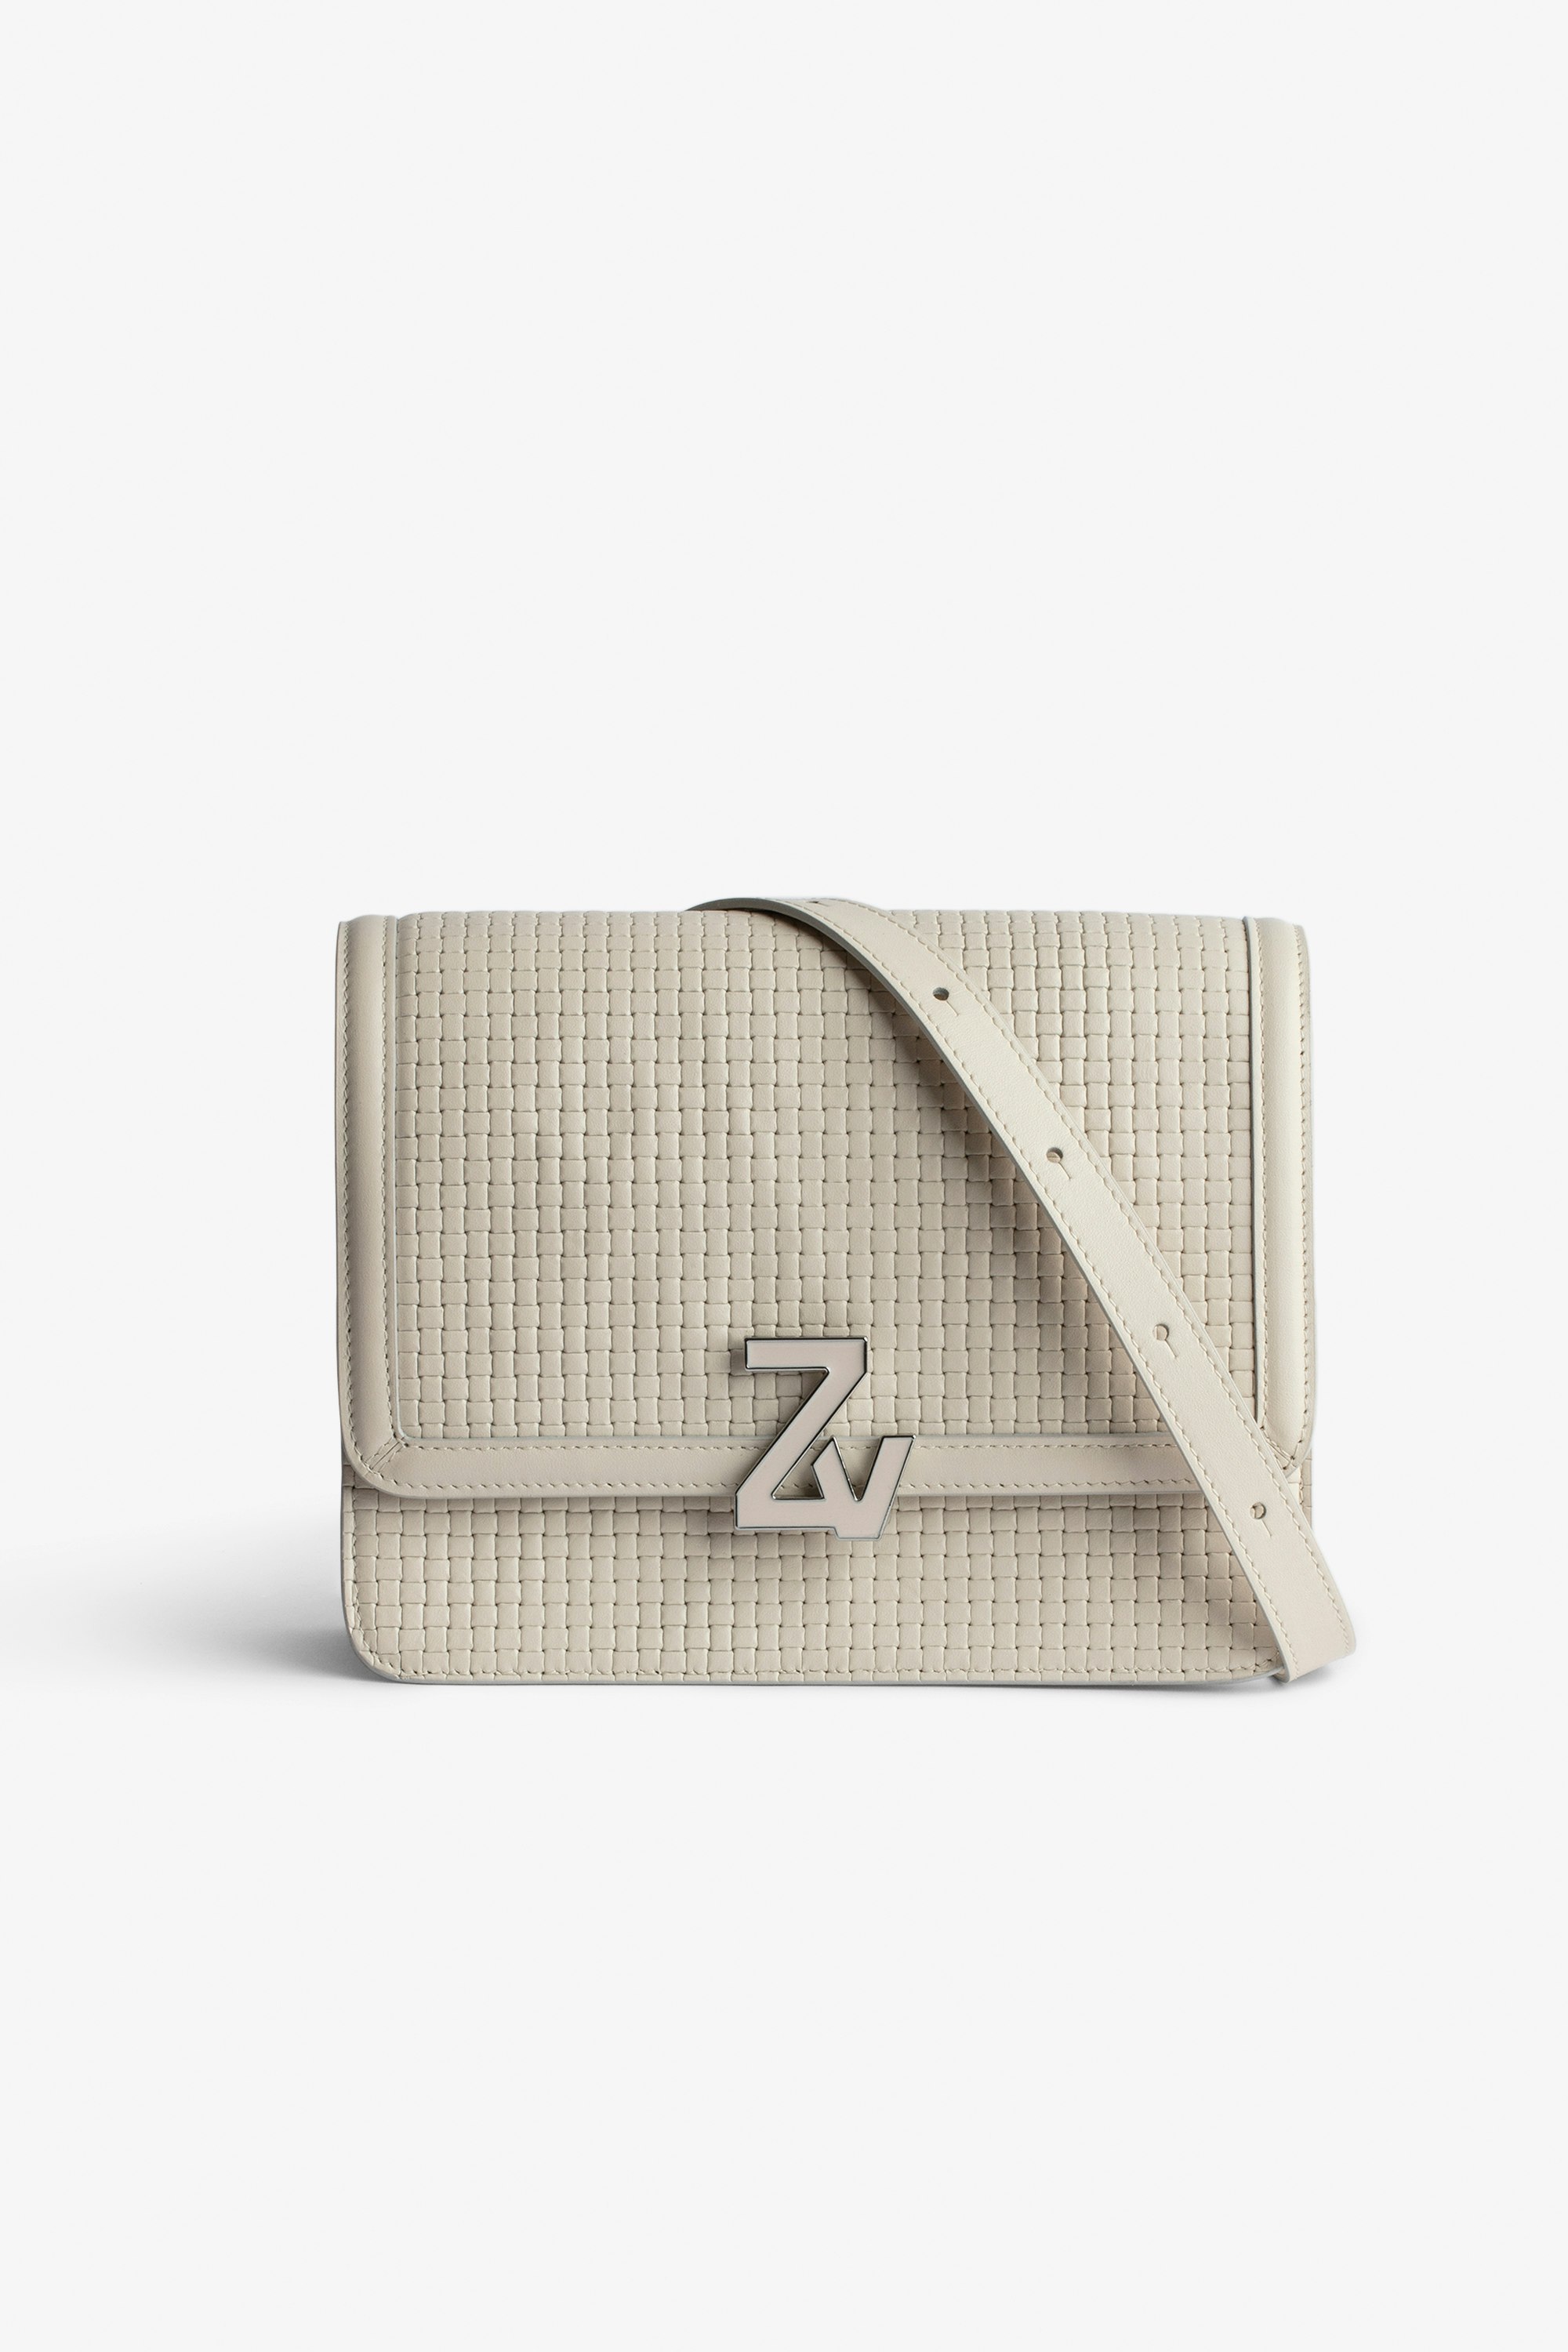 Tasche ZV Initiale Le City Damen-Handtasche aus geflochtenem Leder in Ecru mit Schulterriemen mit ZV-Schließe